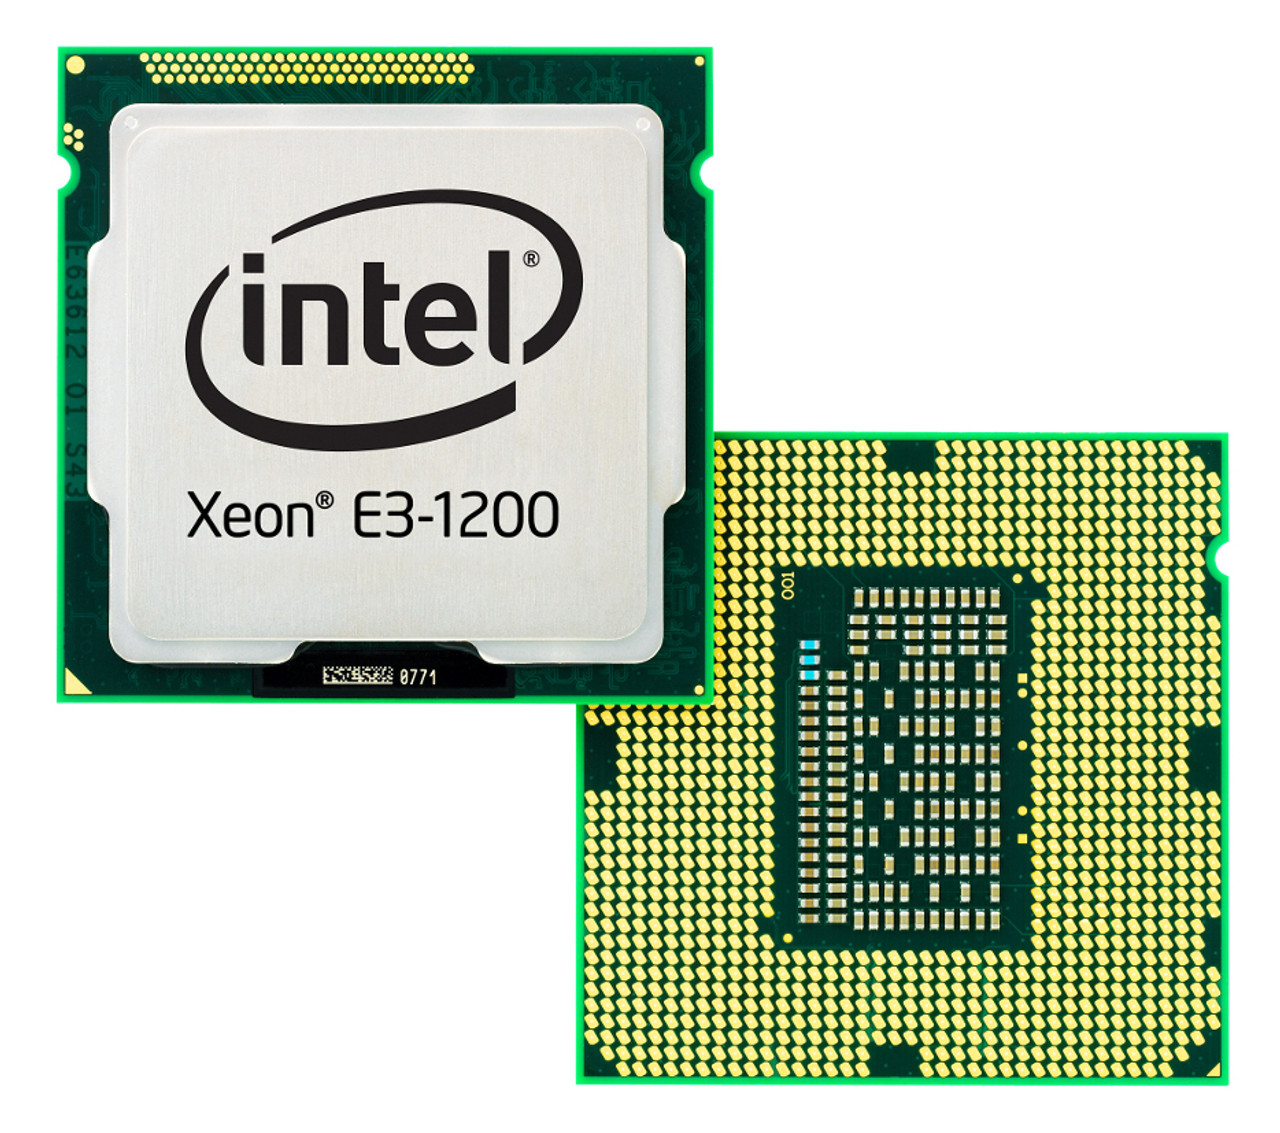 SR14U - Intel Xeon E3-1225 v3 Quad Core 3.20GHz 5.00GT/s DMI 8MB L3 Cache Socket FCLGA1150 Processor